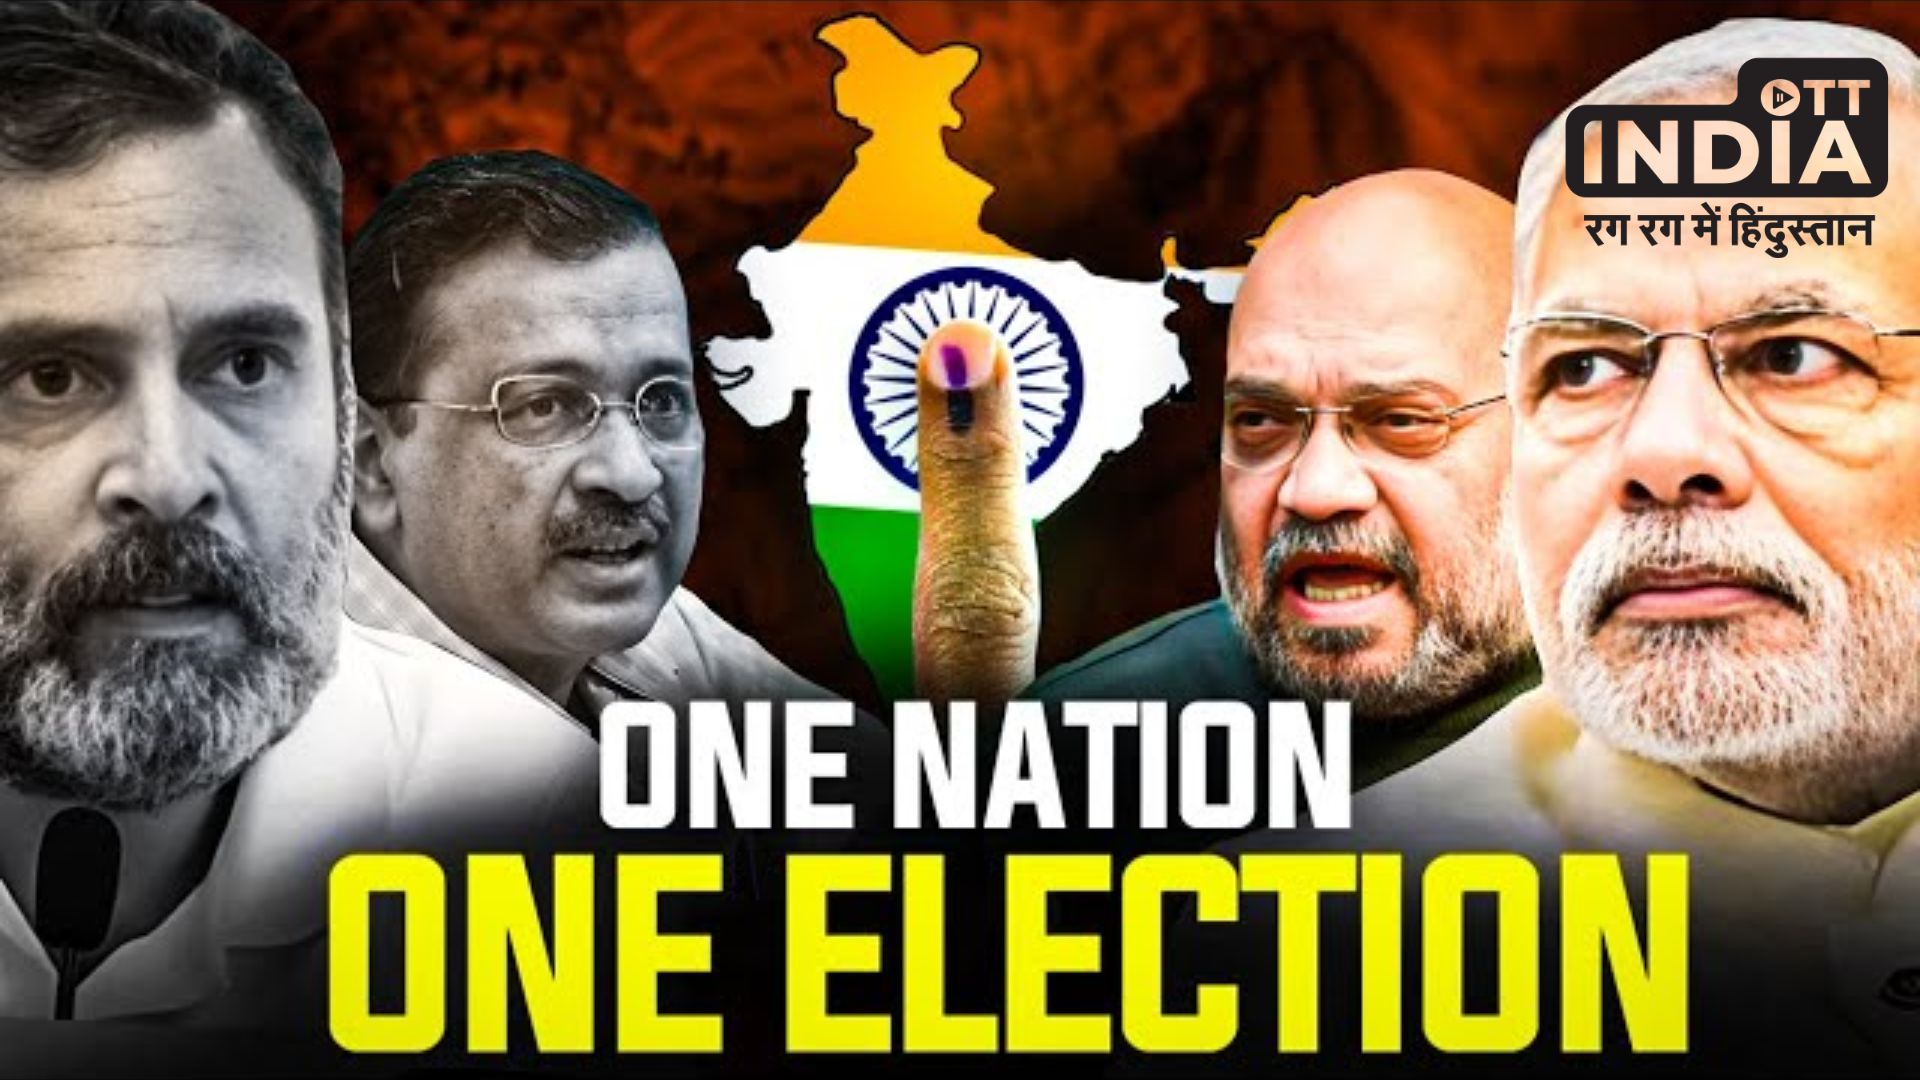 One Nation One Election Meeting: रामनाथ कोविंद की अध्यक्षता में समिति की अहम बैठक आज, लिए जा सकते है बड़े फैसले…